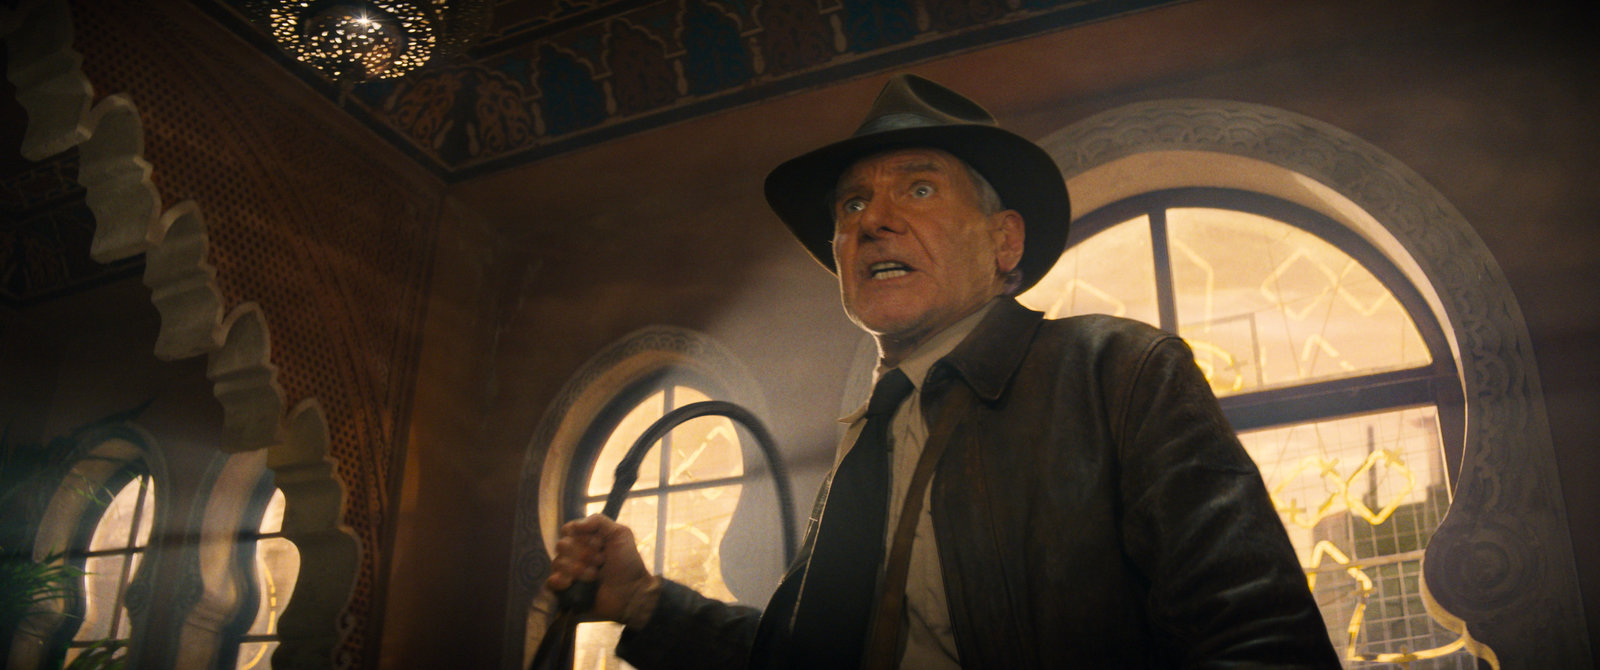 Indiana Jones und das Rad des Schicksals  (Blu-ray Disc)